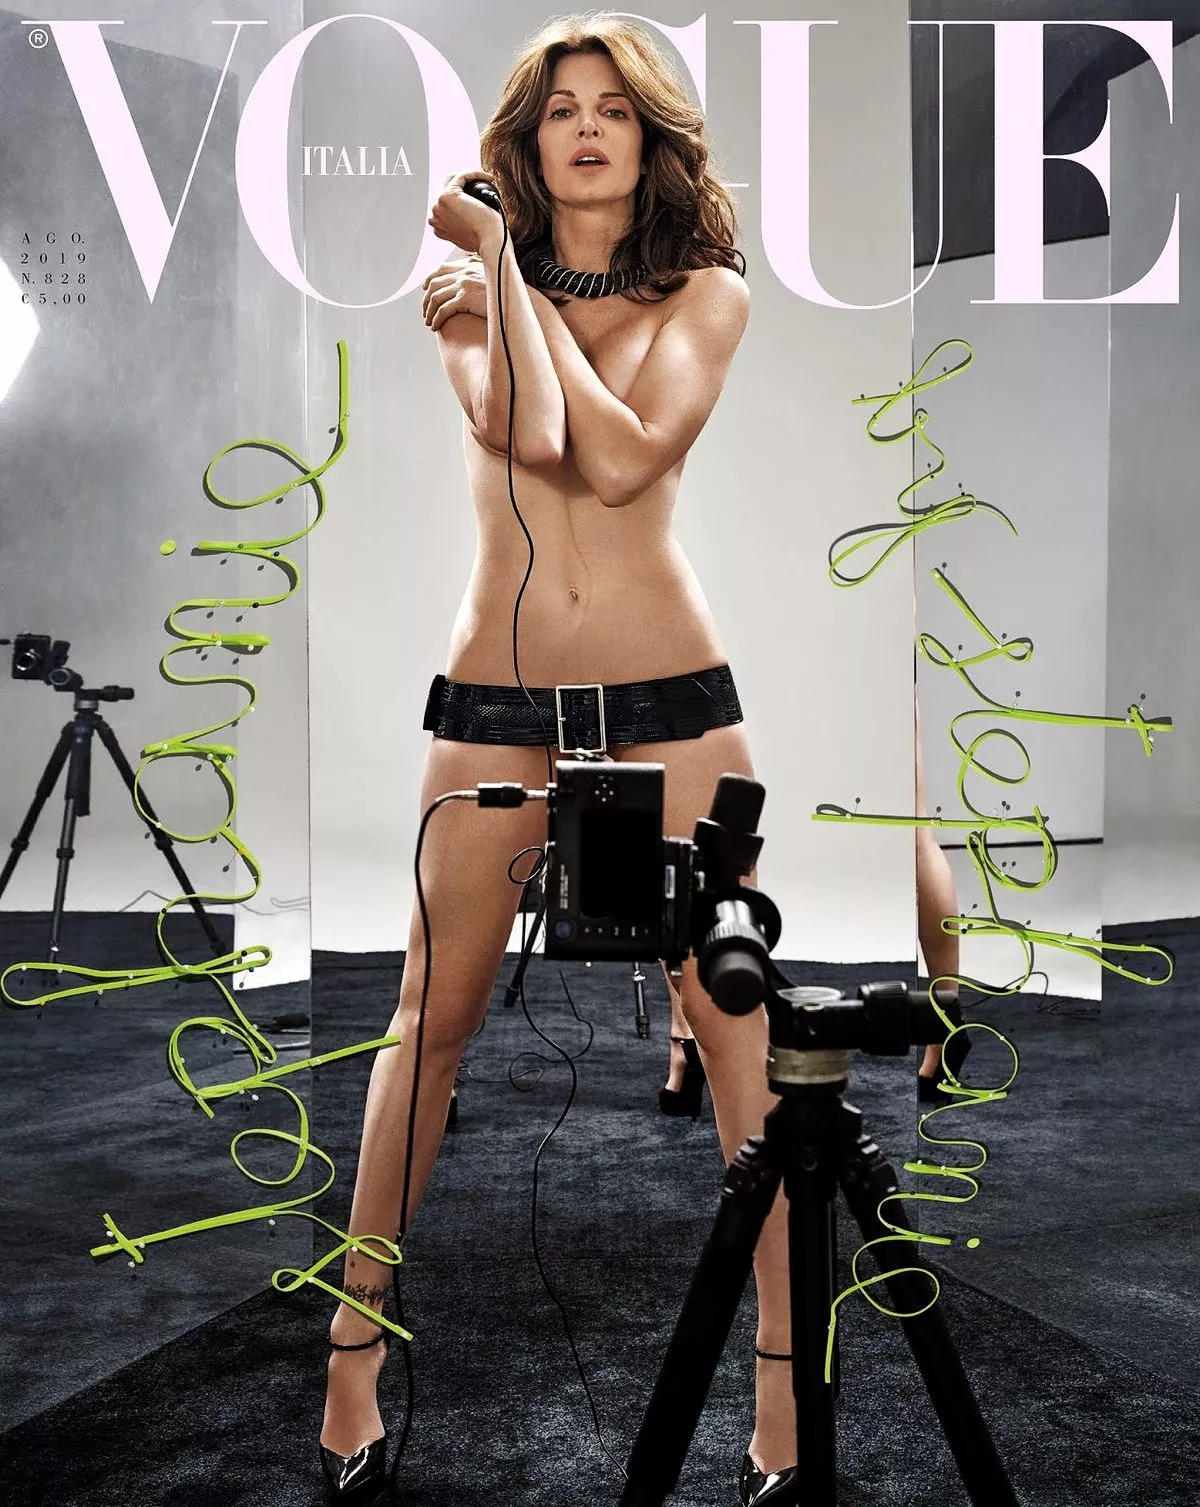 Стефани Сеймур на обложке журнала Vogue Italia